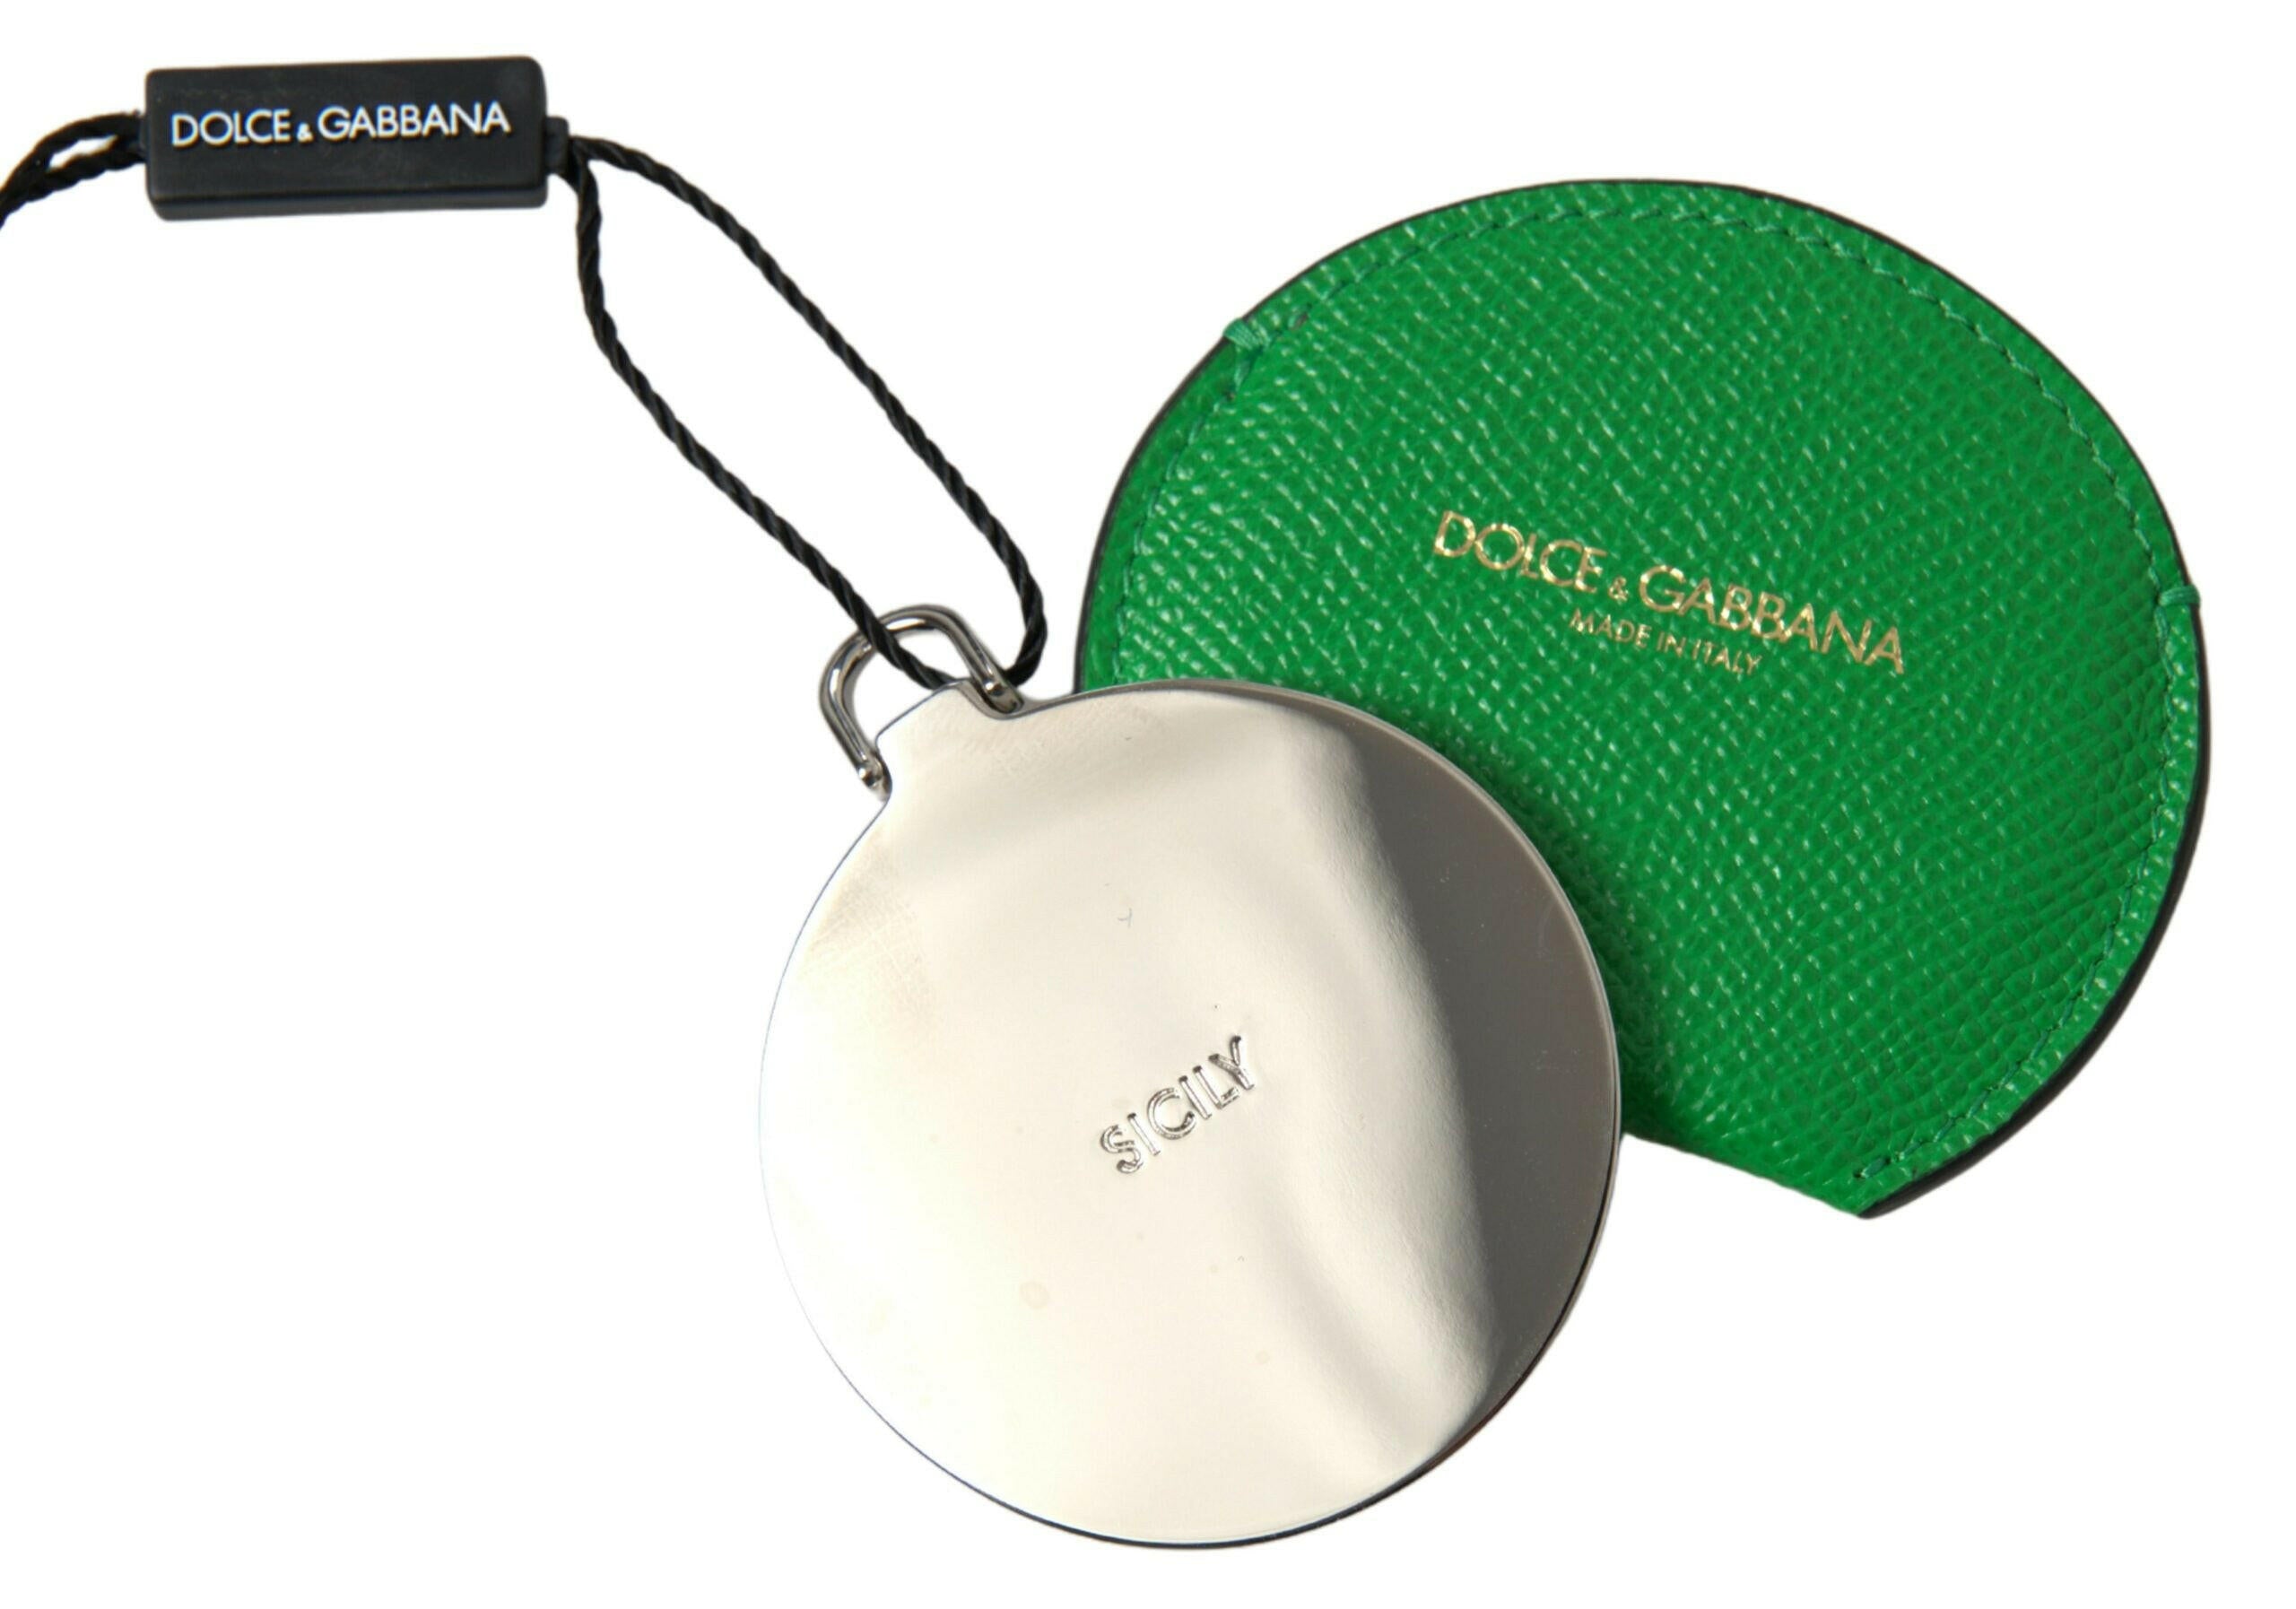 Dolce & Gabbana Green Calfskin Leather Round Logo Hand Mirror Holder - GENUINE AUTHENTIC BRAND LLC  